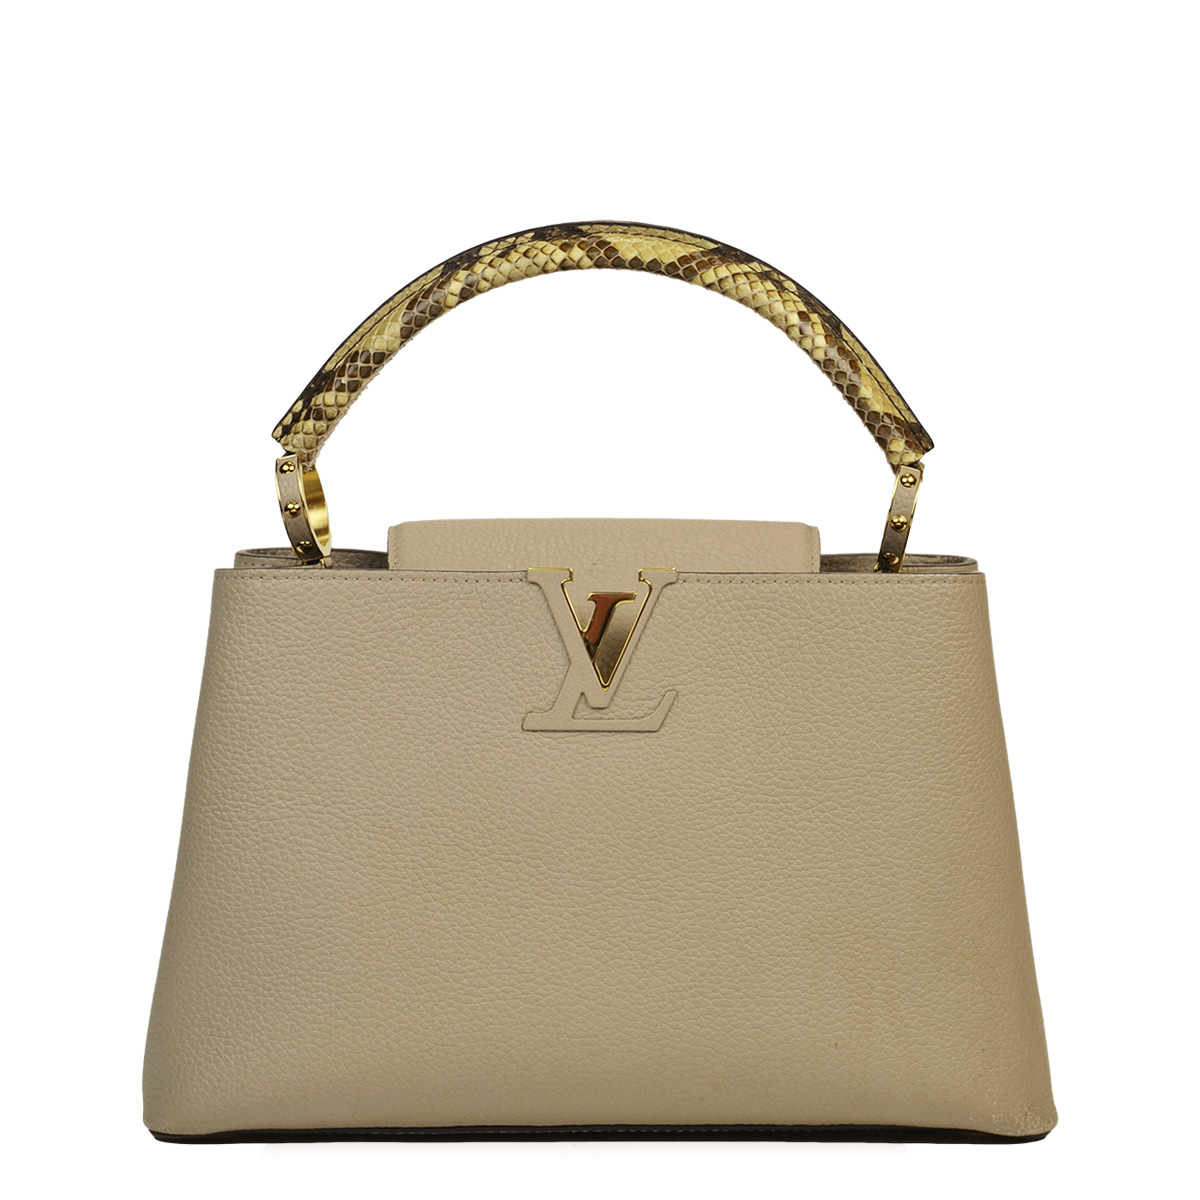 Louis Vuitton - Authenticated Capucines Handbag - Cloth Black Plain for Women, Never Worn